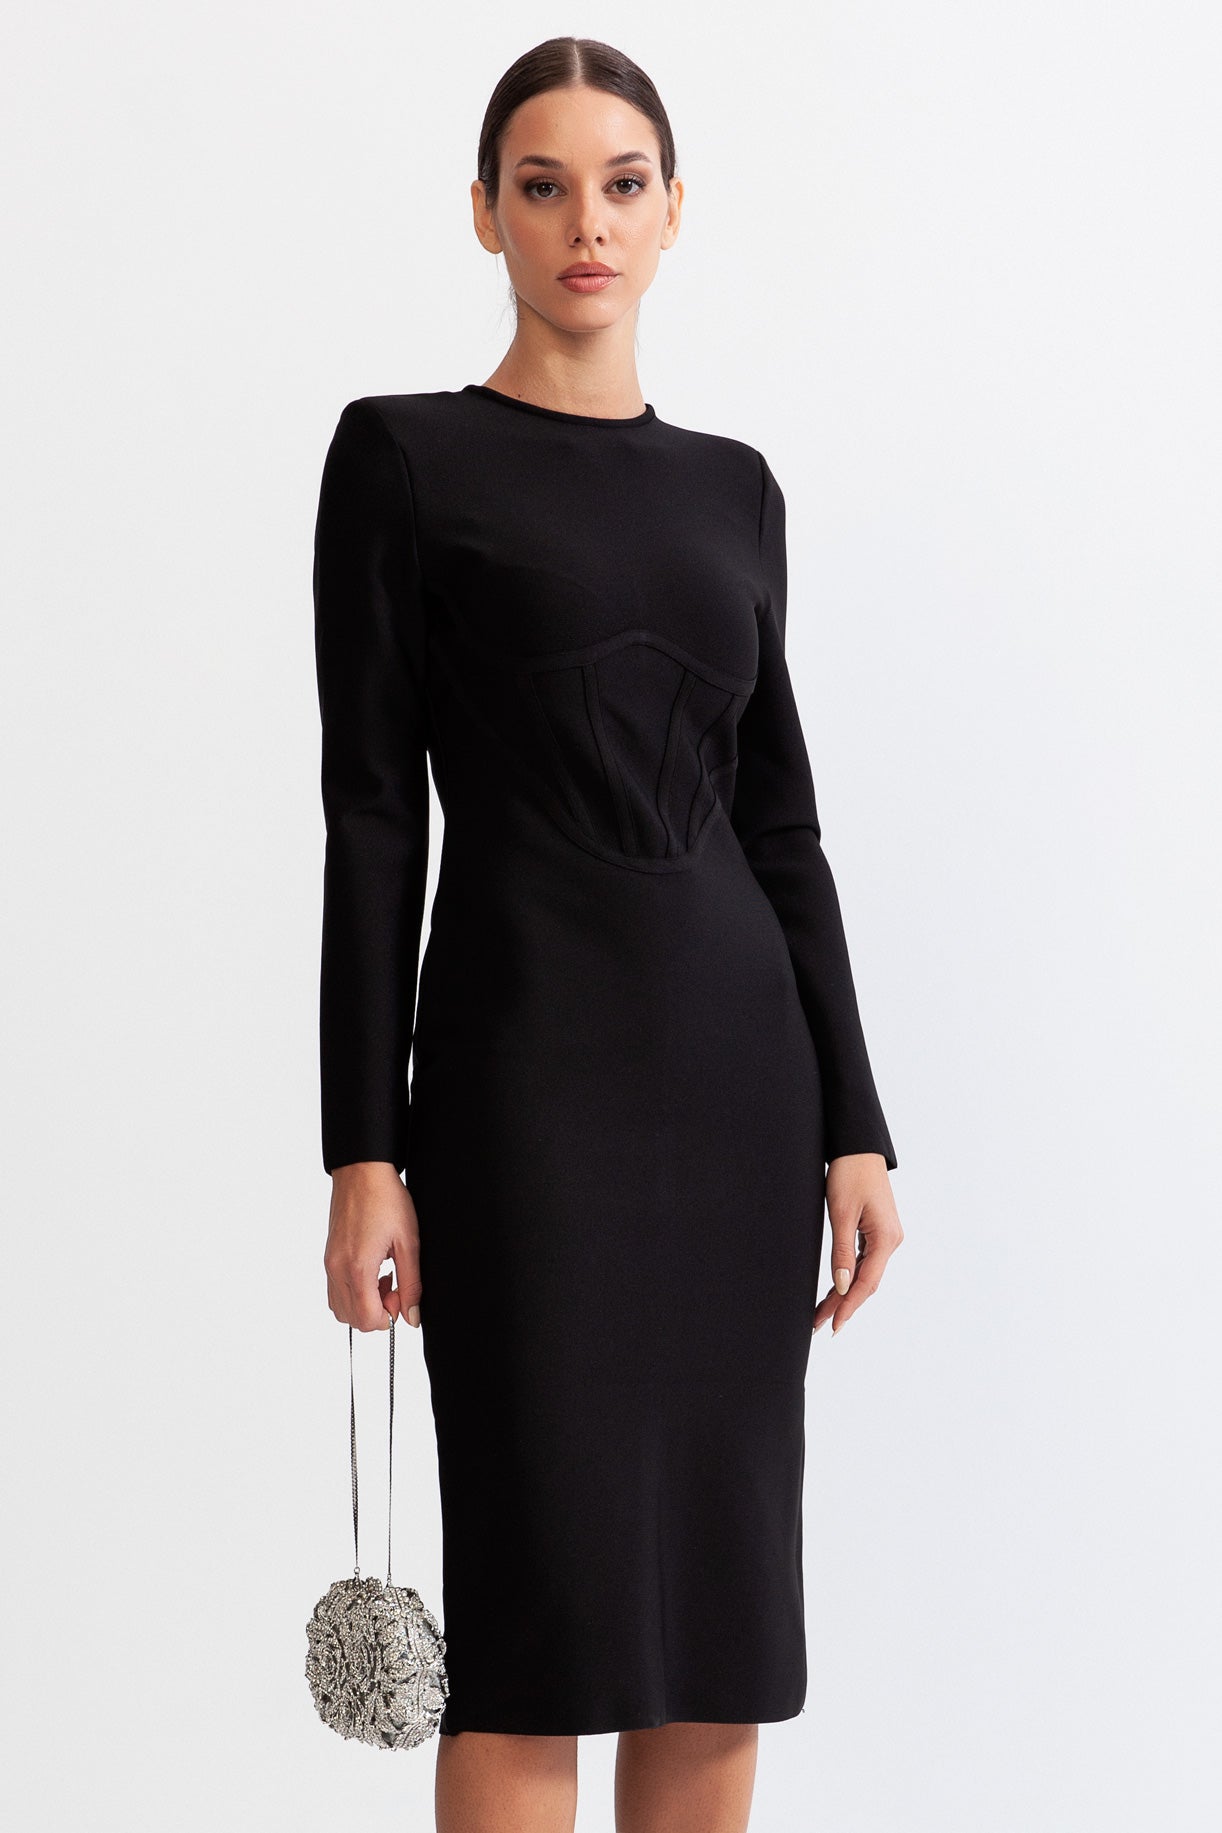 AMARINA Hourglass Midi Dress with Corset - Black